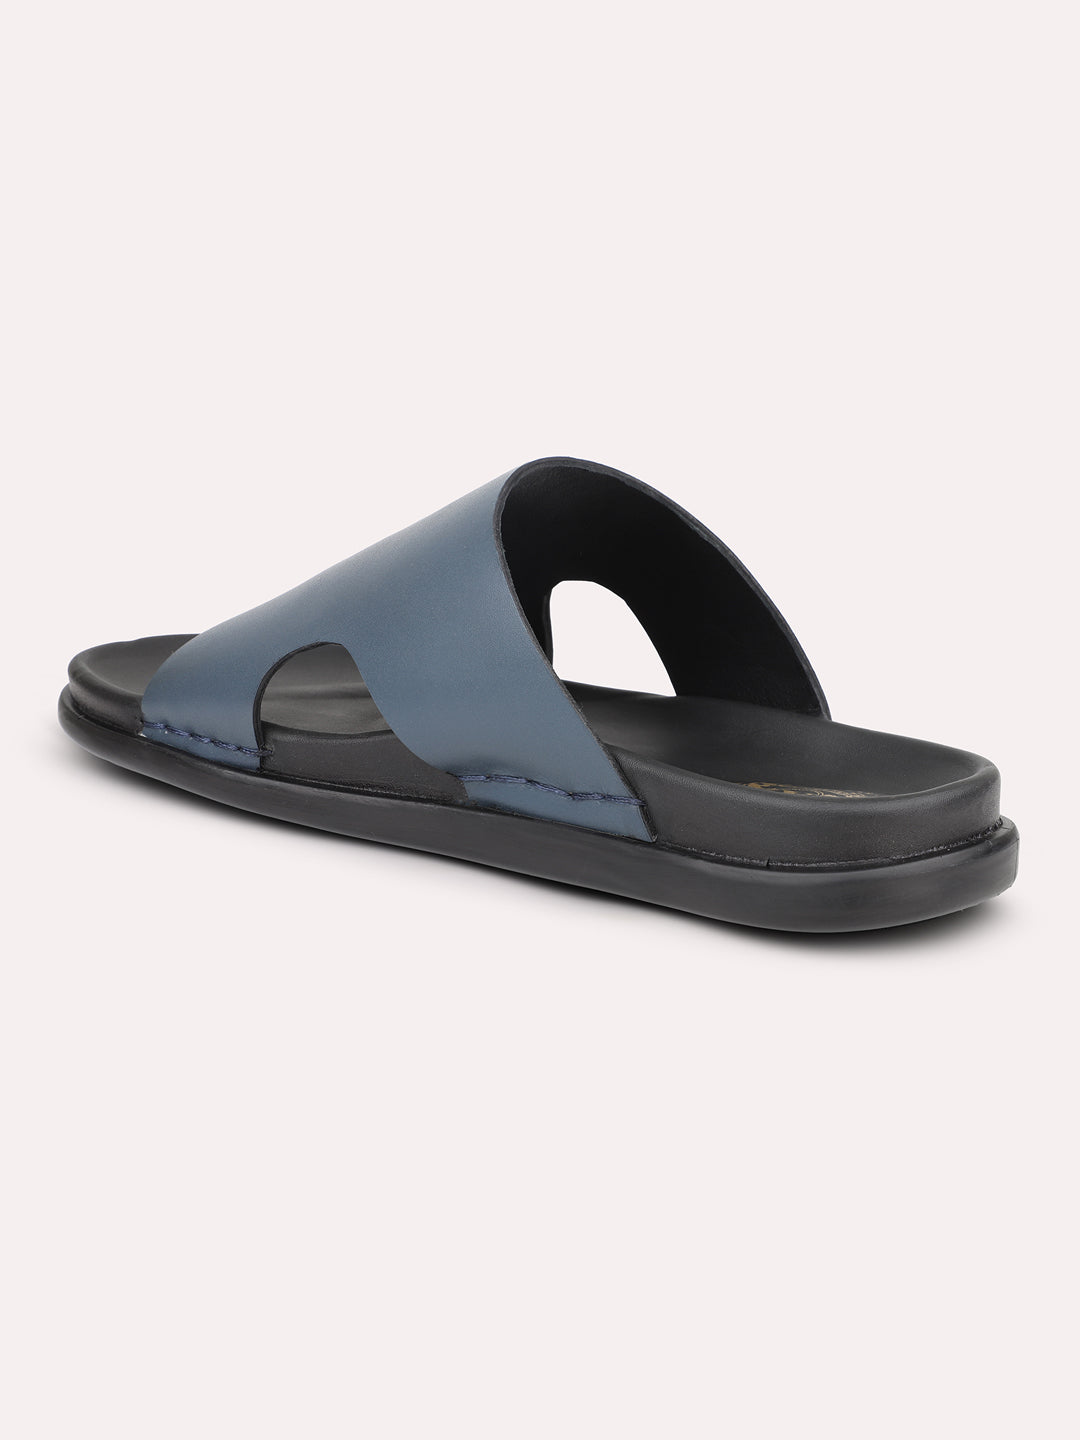 Atesber Blue Casual Slipon Sandal For Men's